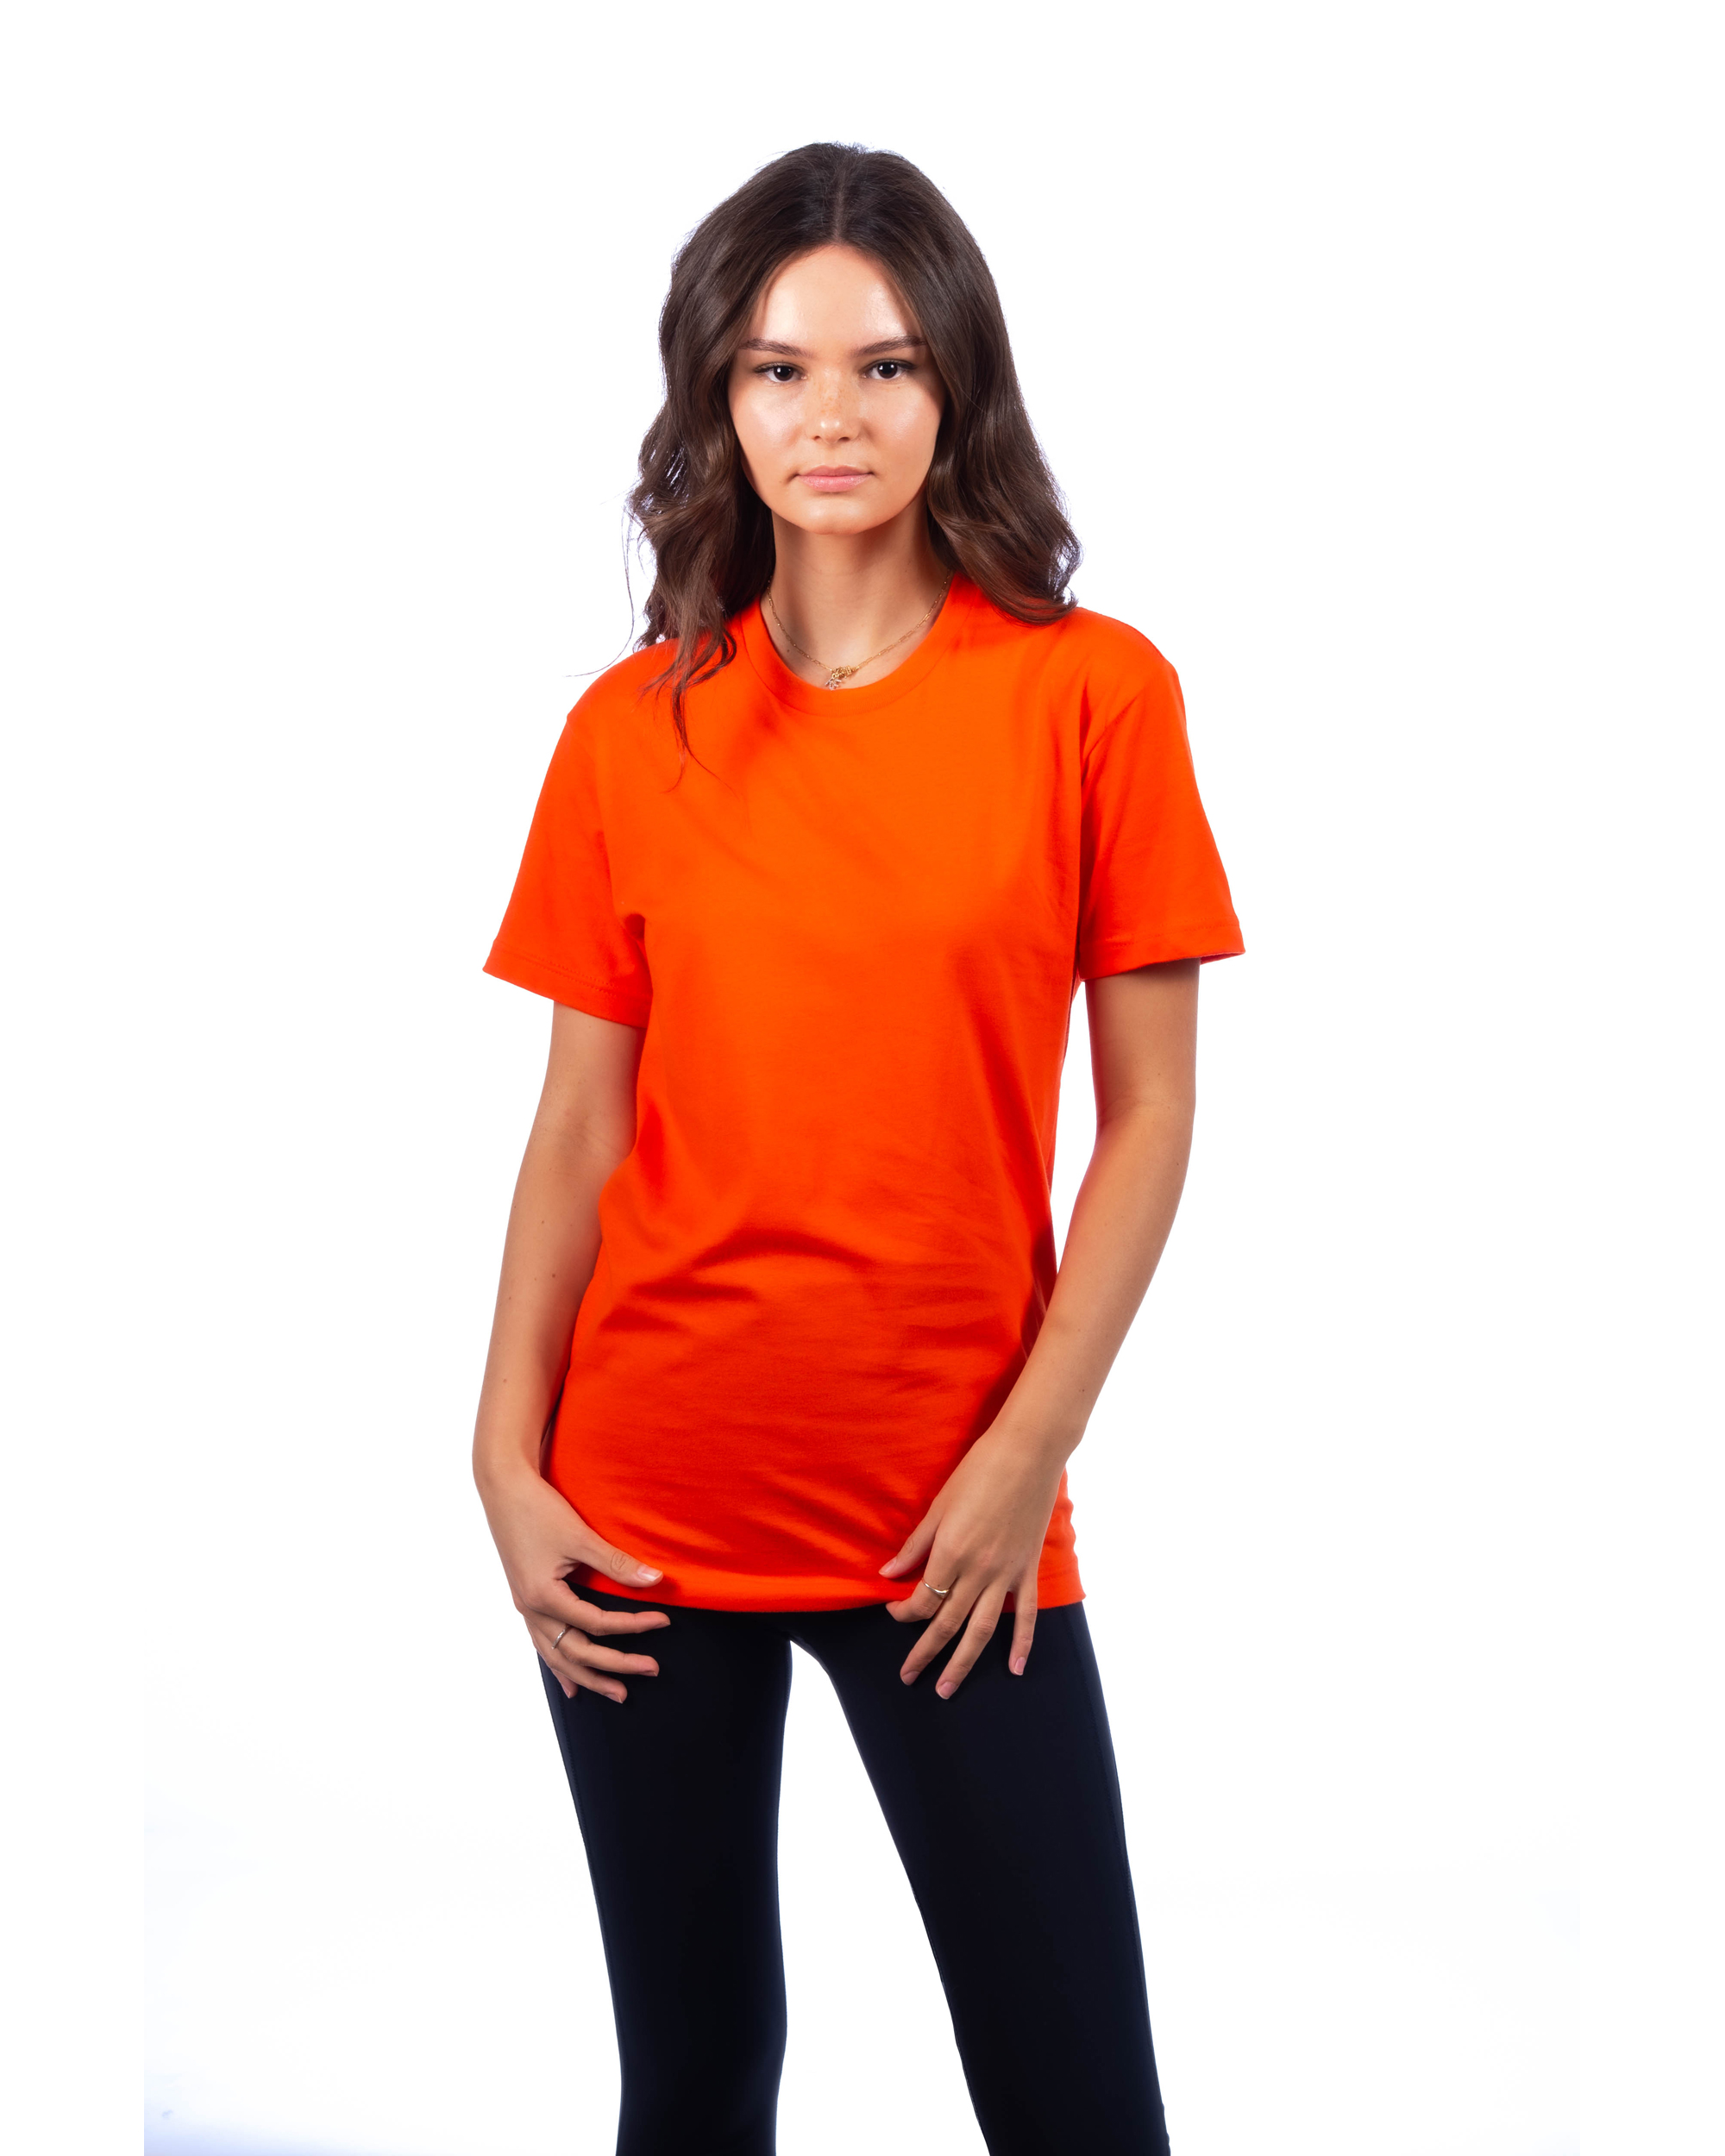 Next Level Apparel® 3600 Unisex Cotton T-Shirt